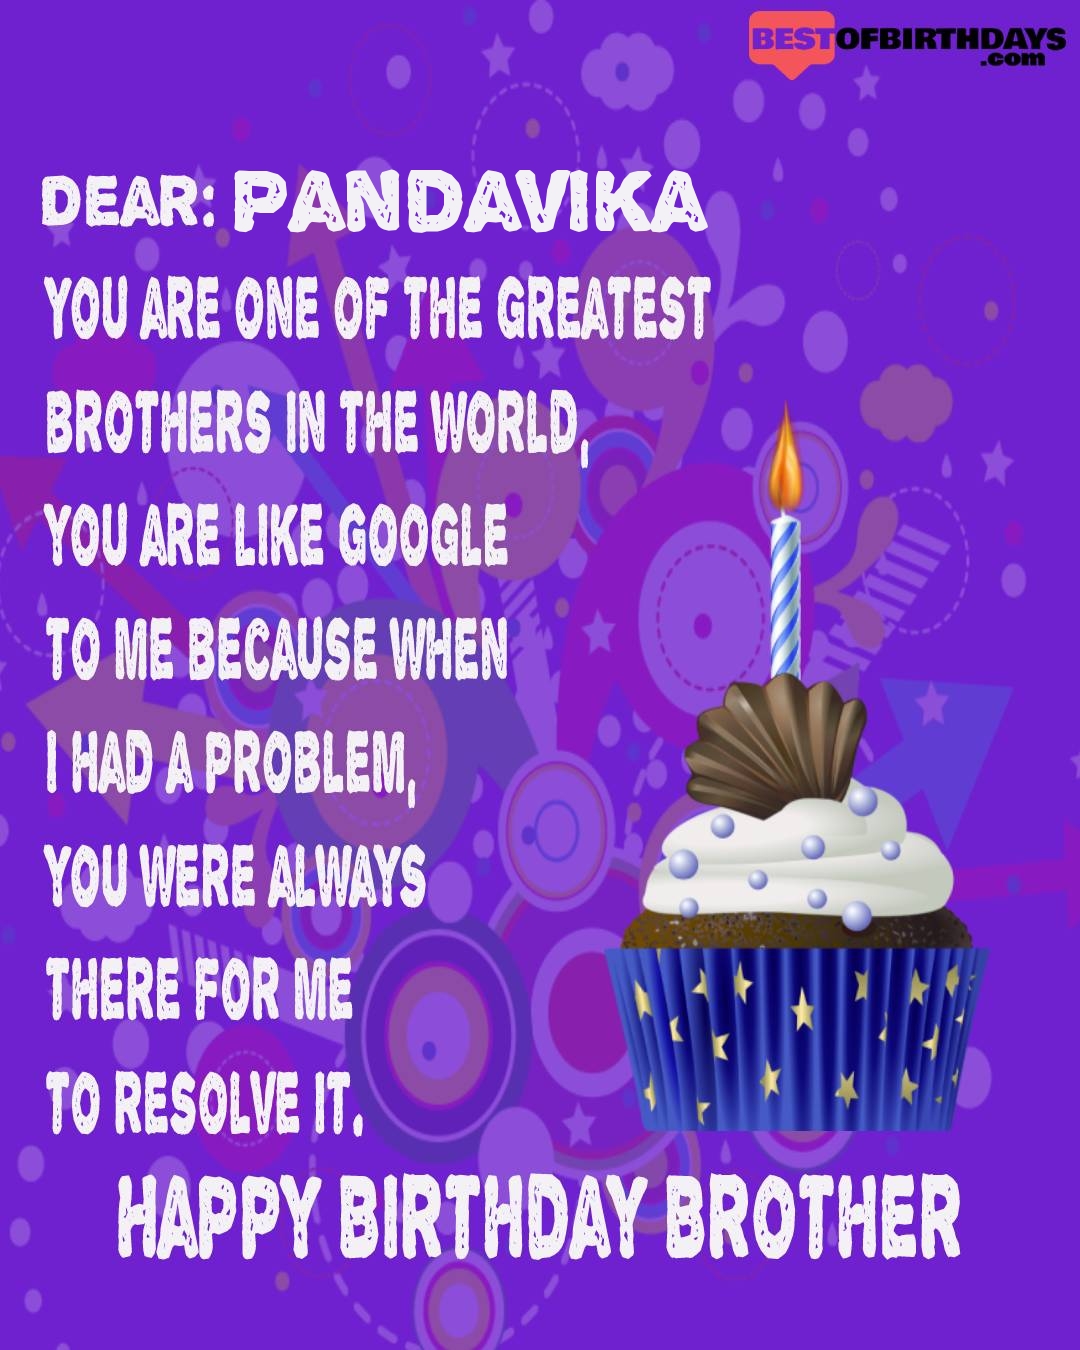 Happy birthday pandavika bhai brother bro